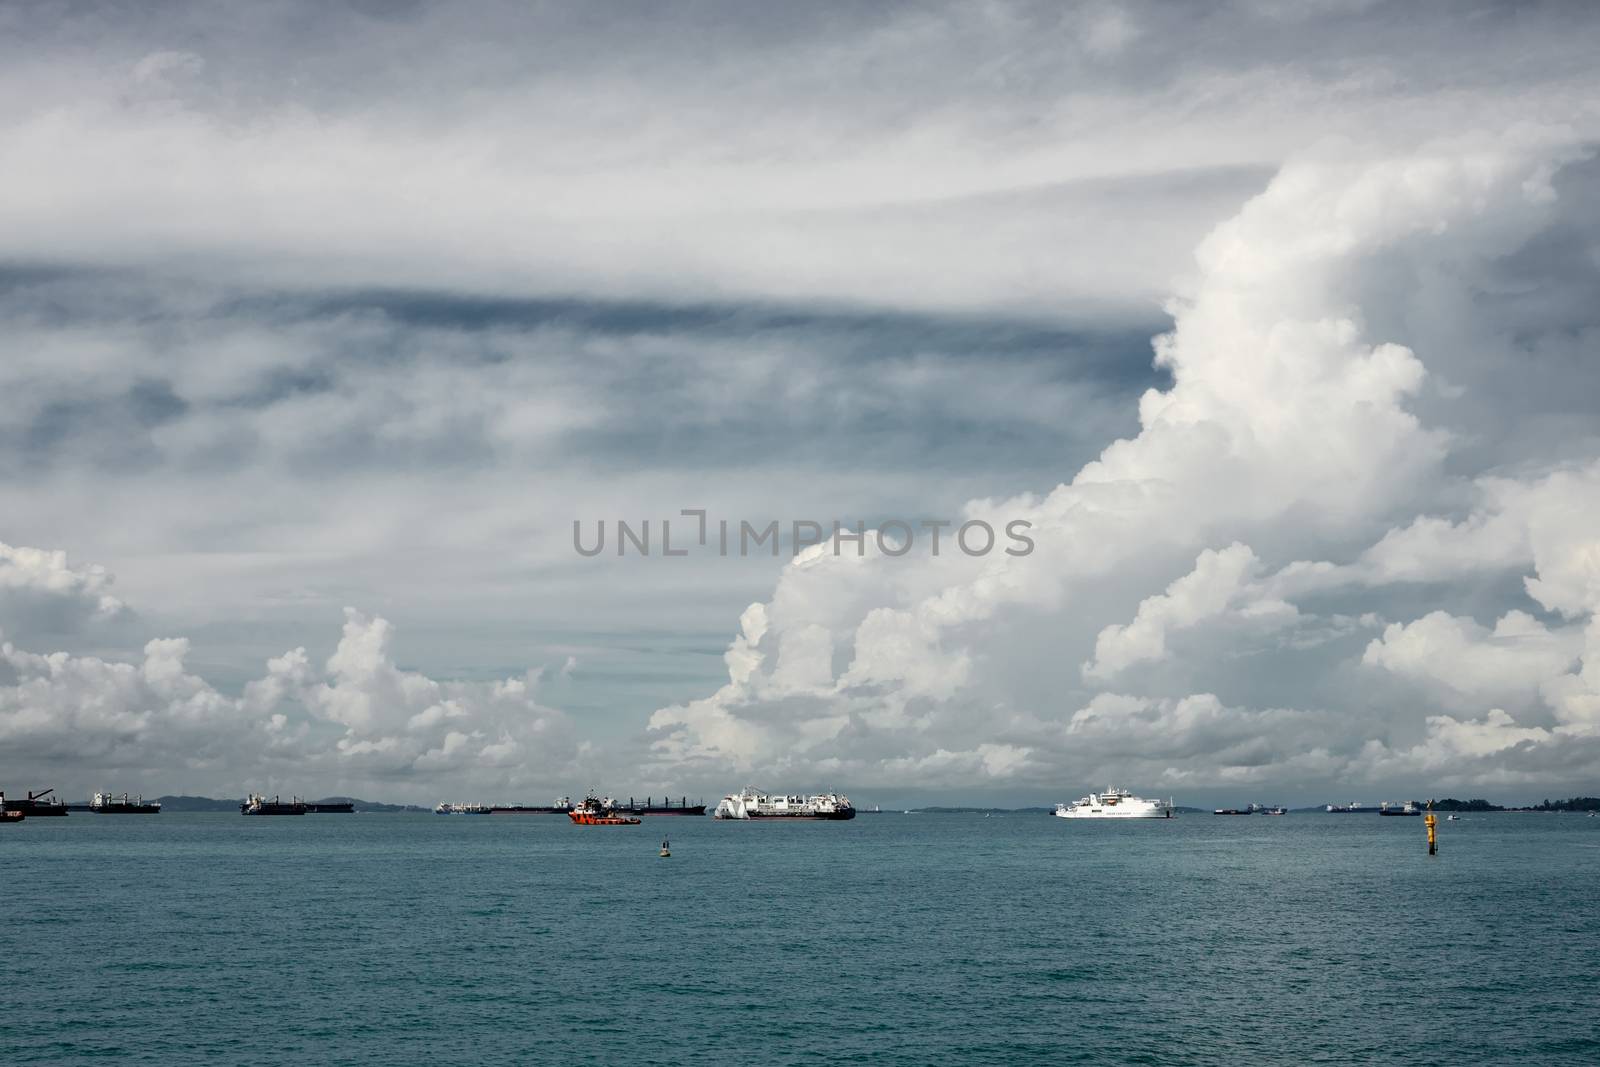 Many ships at the horizon. Cloudy sky